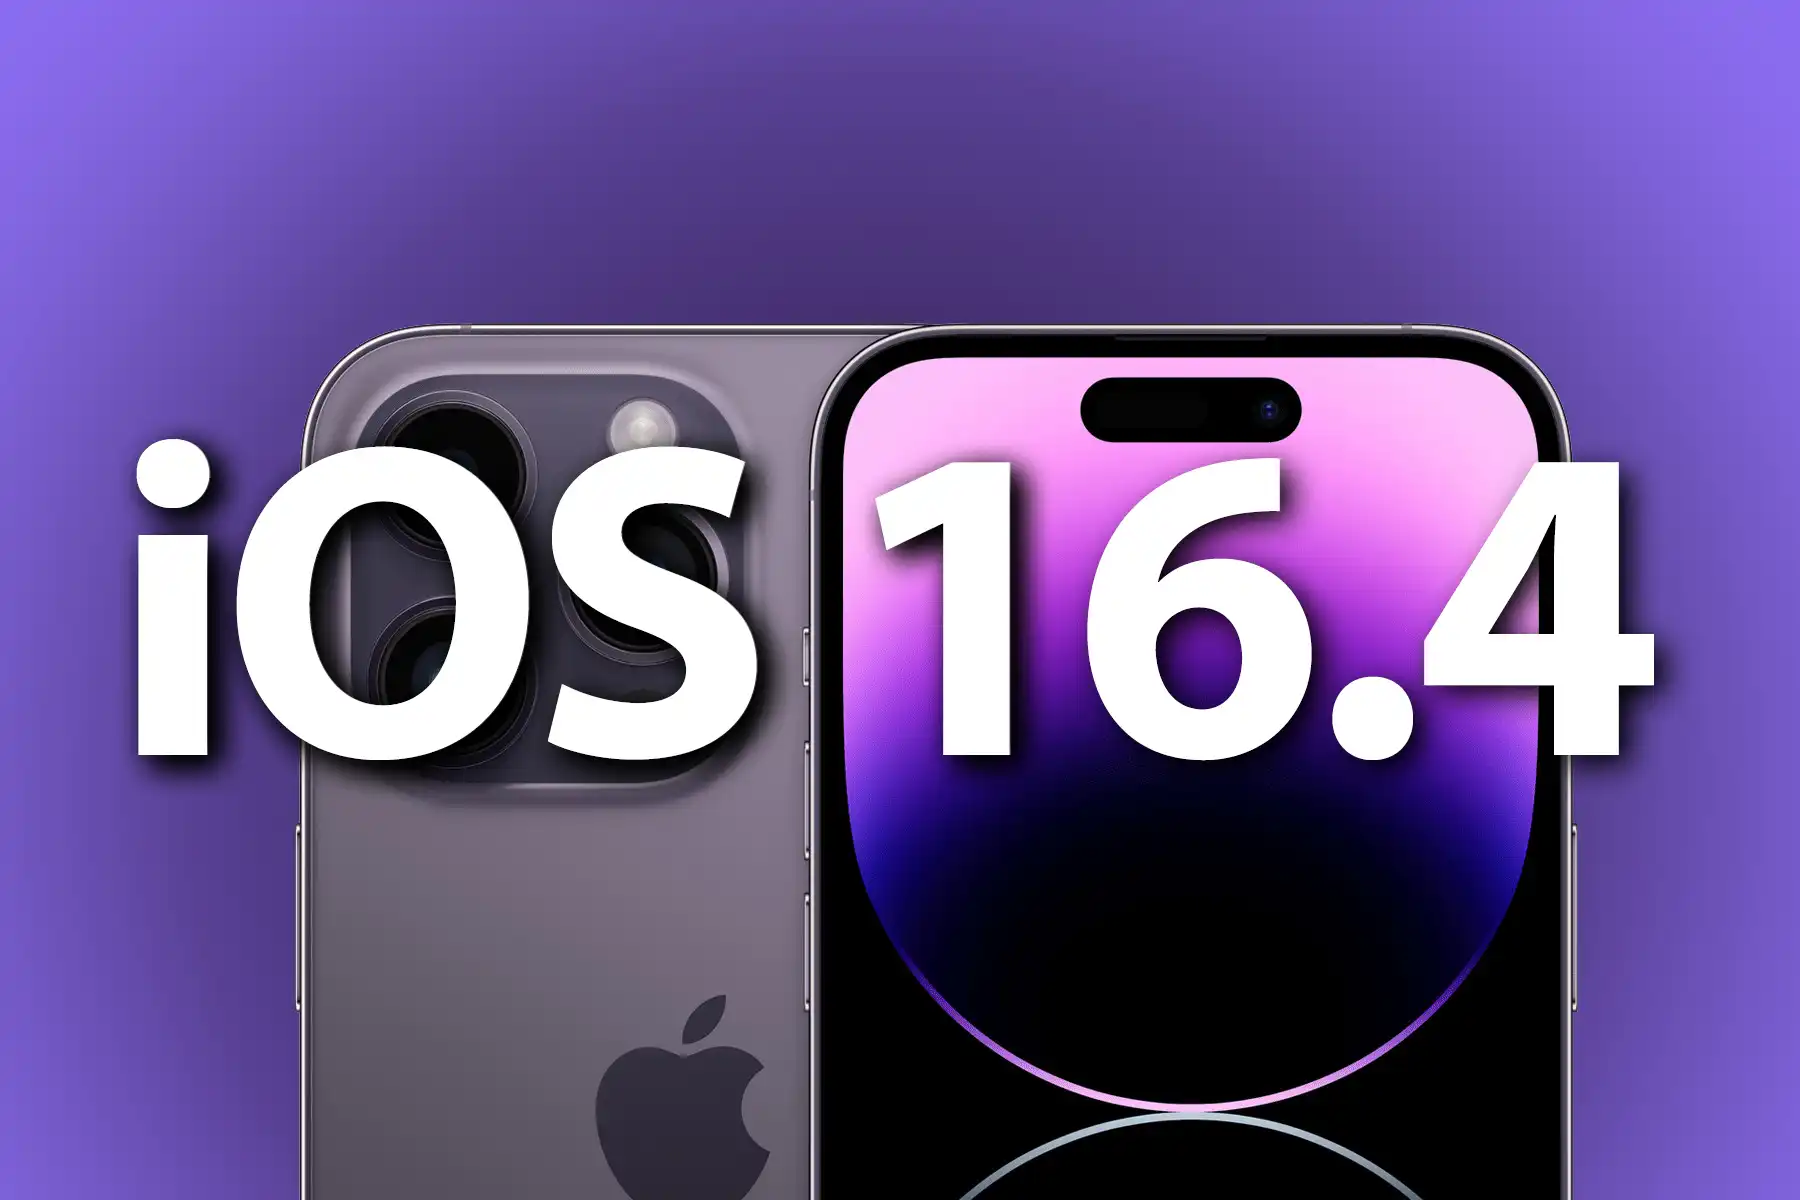 ios16 4 17.jpg - Apple phát hành iOS 16.4, thêm nhiều emoji mới